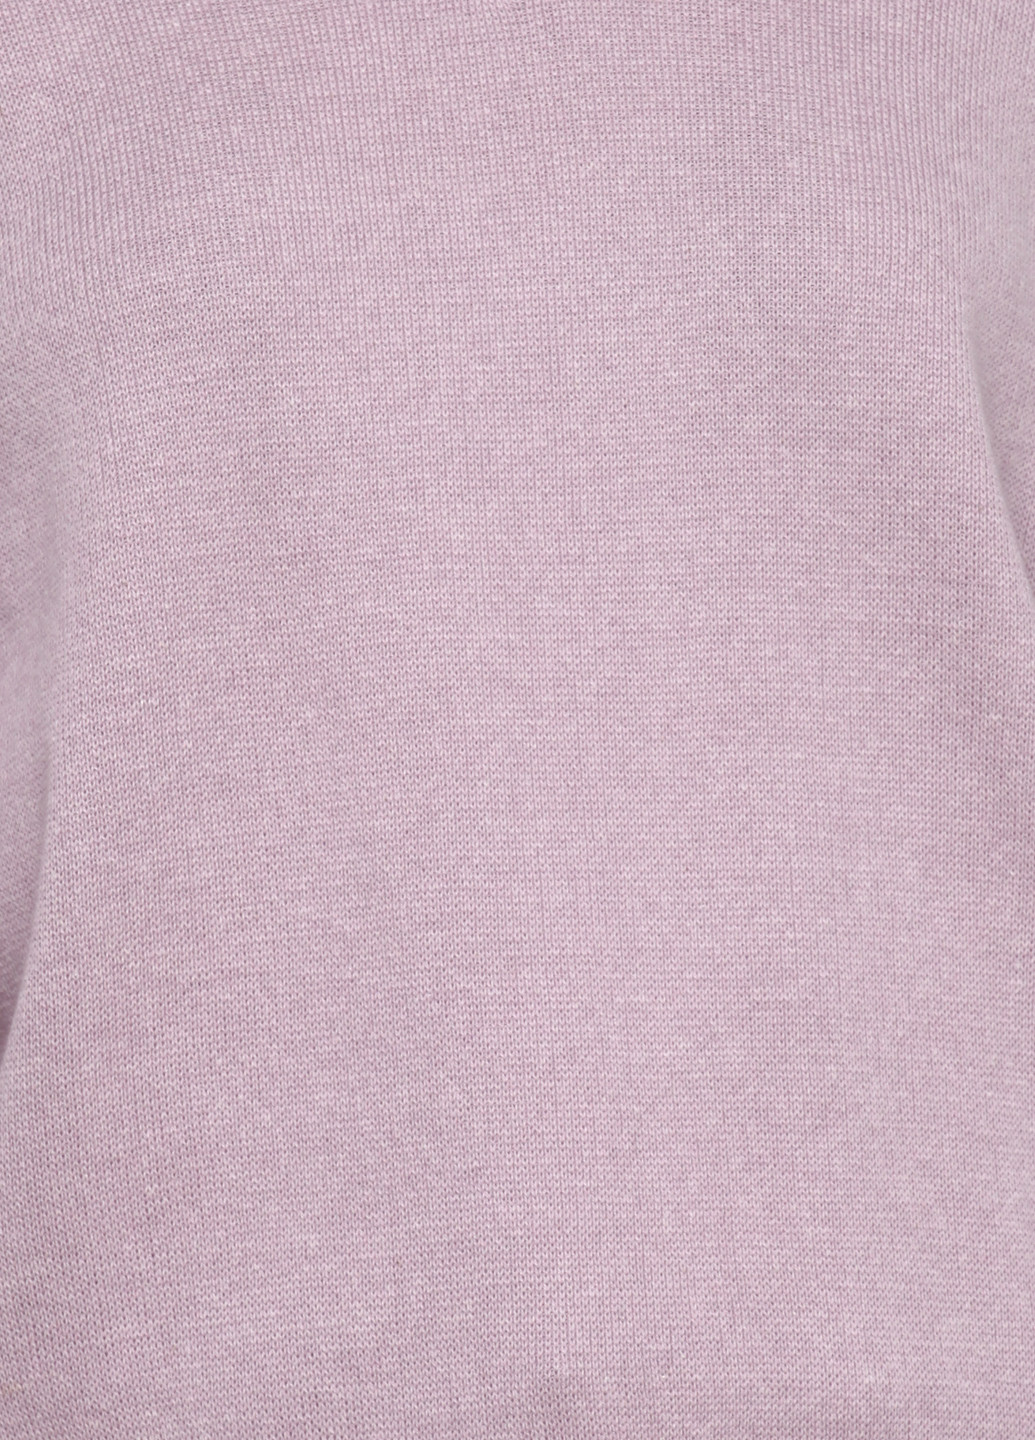 Бледно-лиловый демисезонный пуловер пуловер Only Women